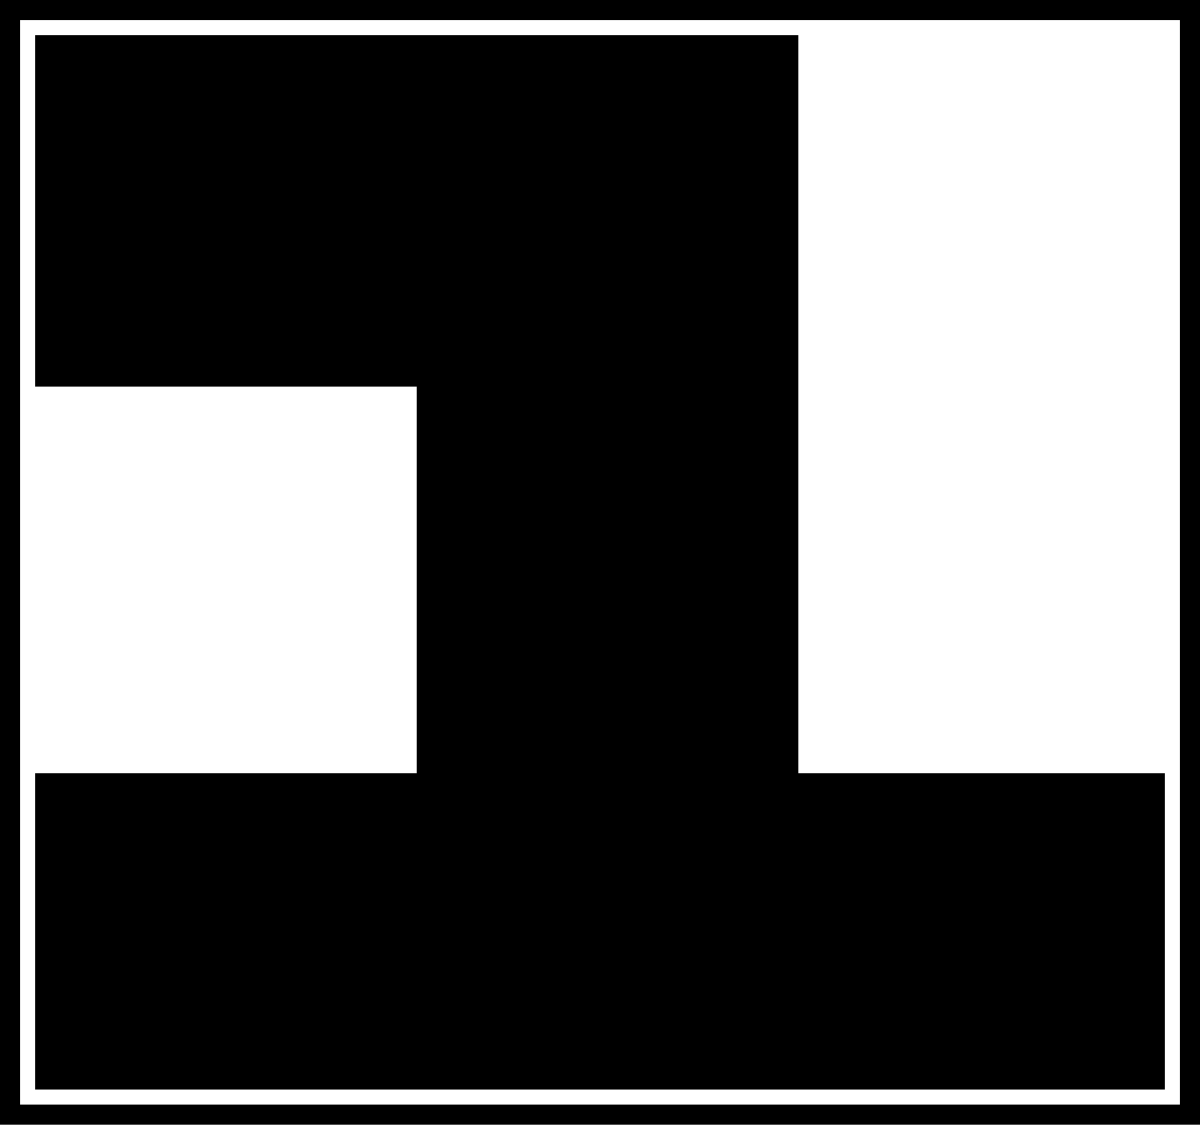 Телеканал примера 1 1. Лого 1 й канал Останкино. 1 Й канал Останкино 1993 логотип. Логотип первый канал Останкино 1991-1995. Первый канал Останкино 1992.